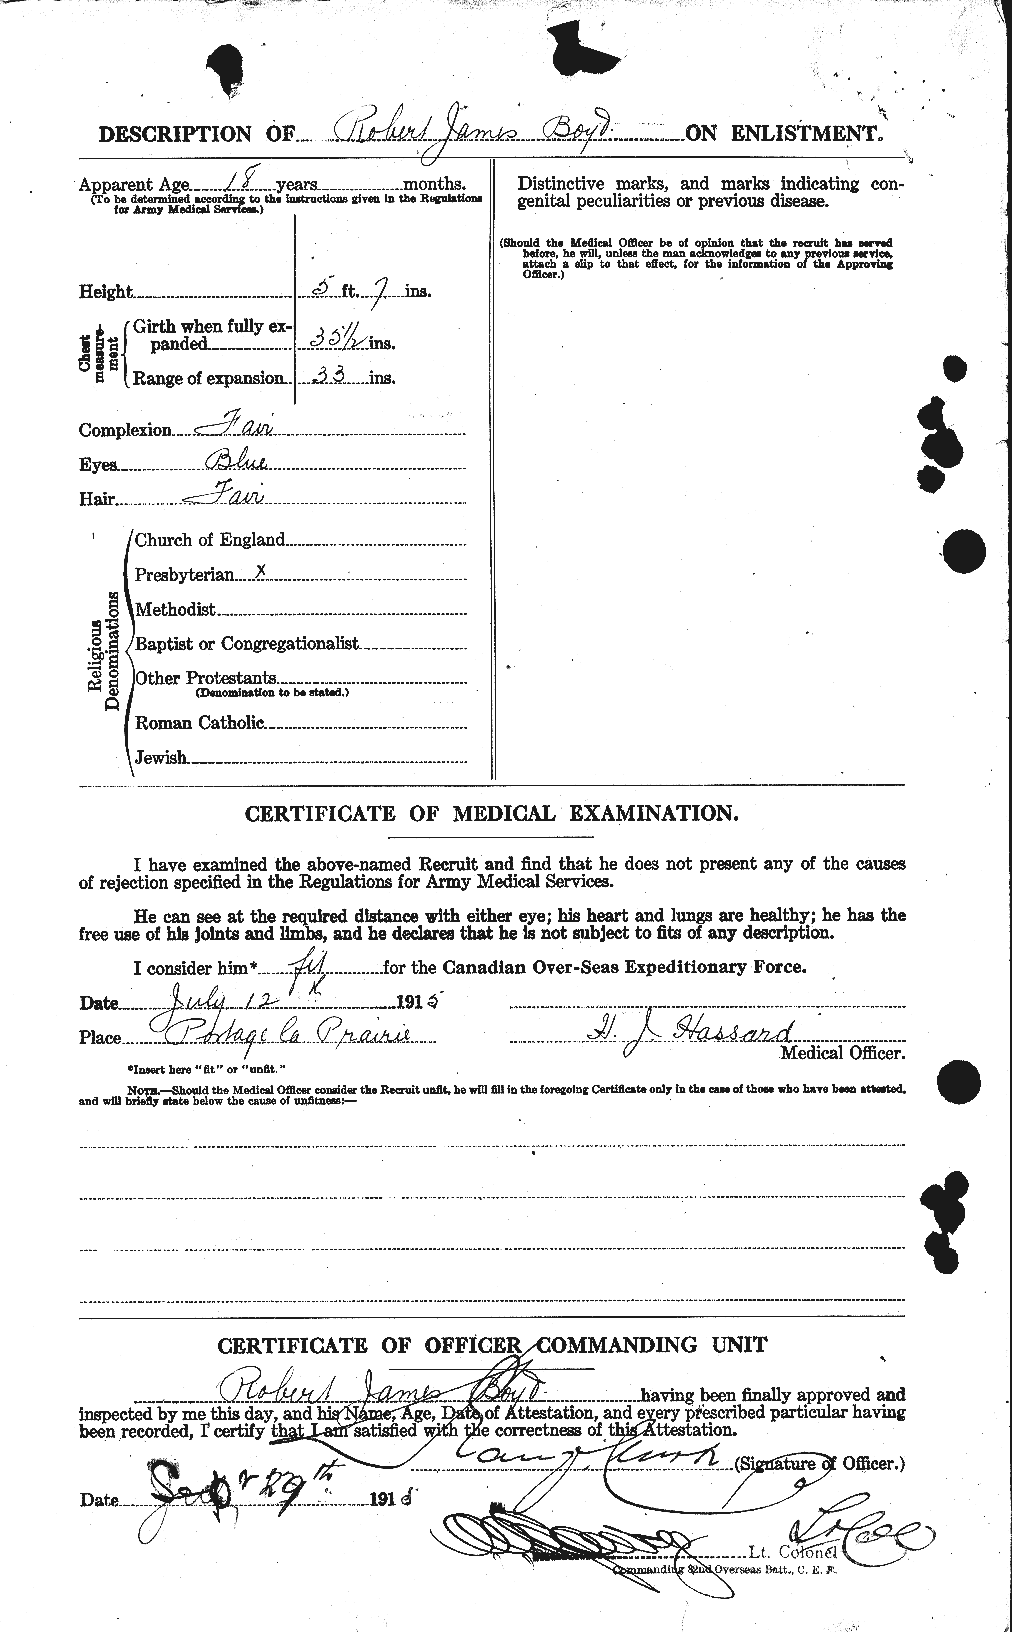 Dossiers du Personnel de la Première Guerre mondiale - CEC 257084b